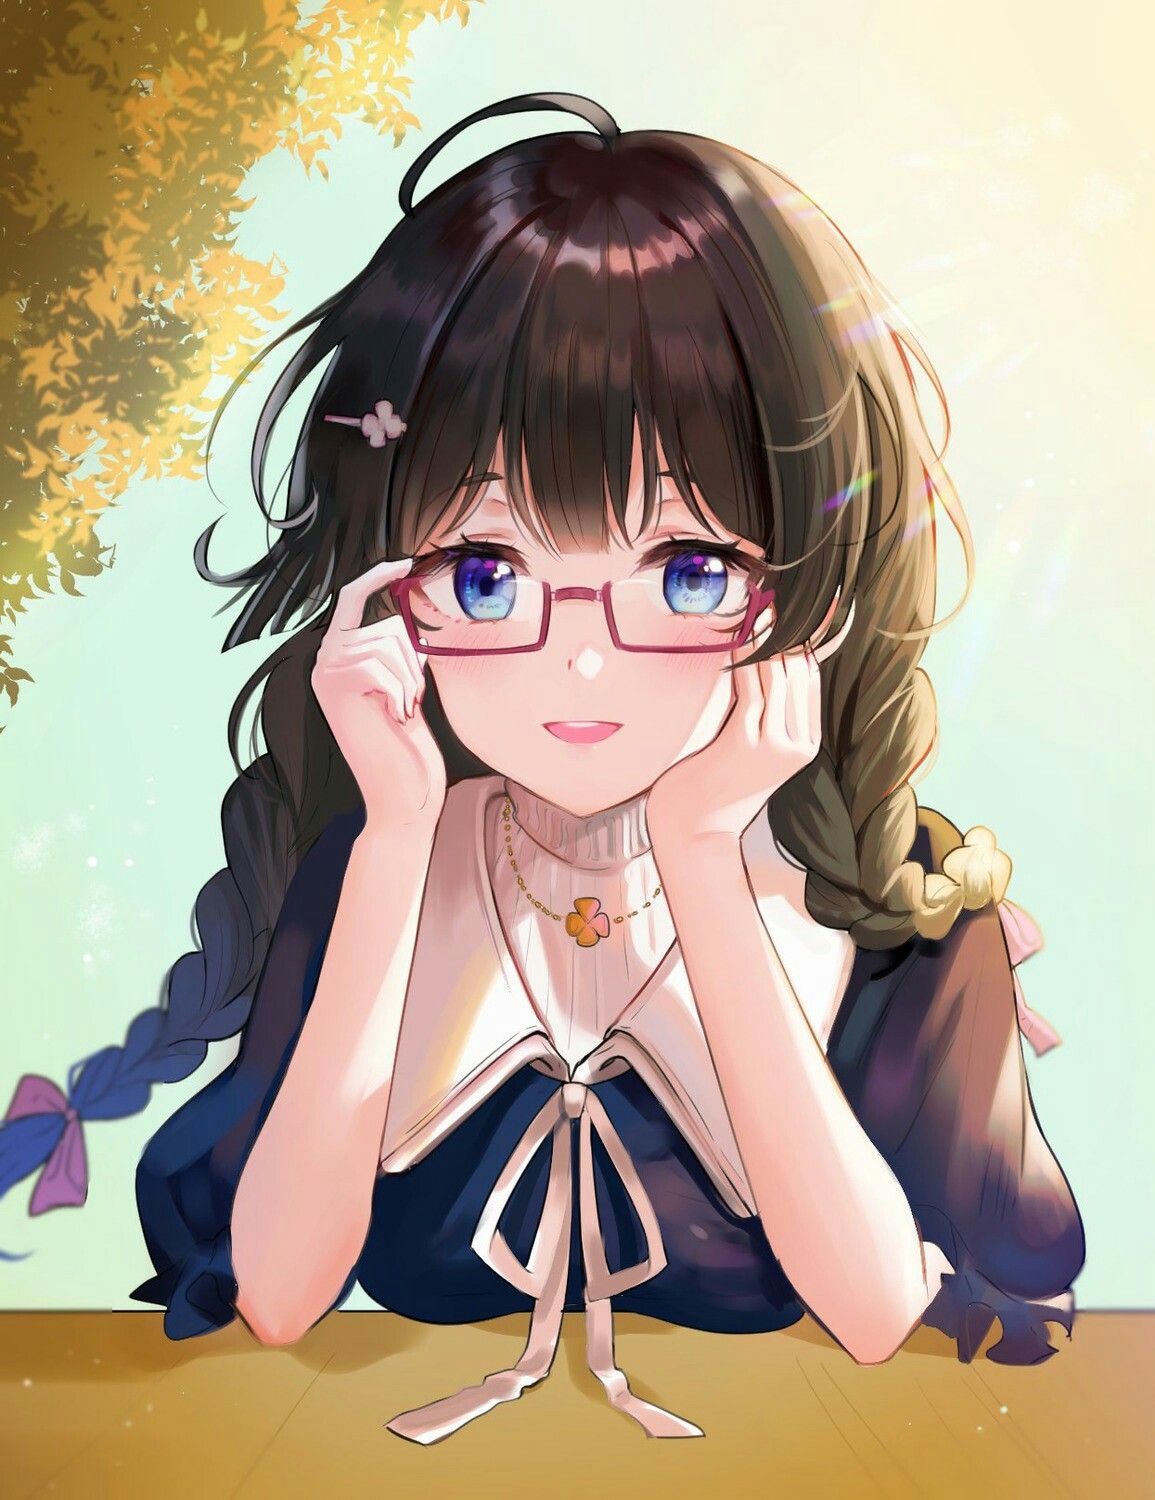 Kính râm, áo thun trắng và nụ cười đầy tươi tắn - cô nàng anime đeo kính cute sẽ đem đến cho bạn cảm giác ấm áp và dễ chịu. Hãy chiêm ngưỡng hình ảnh của cô nàng này để cảm nhận sự dịu dàng và duyên dáng.